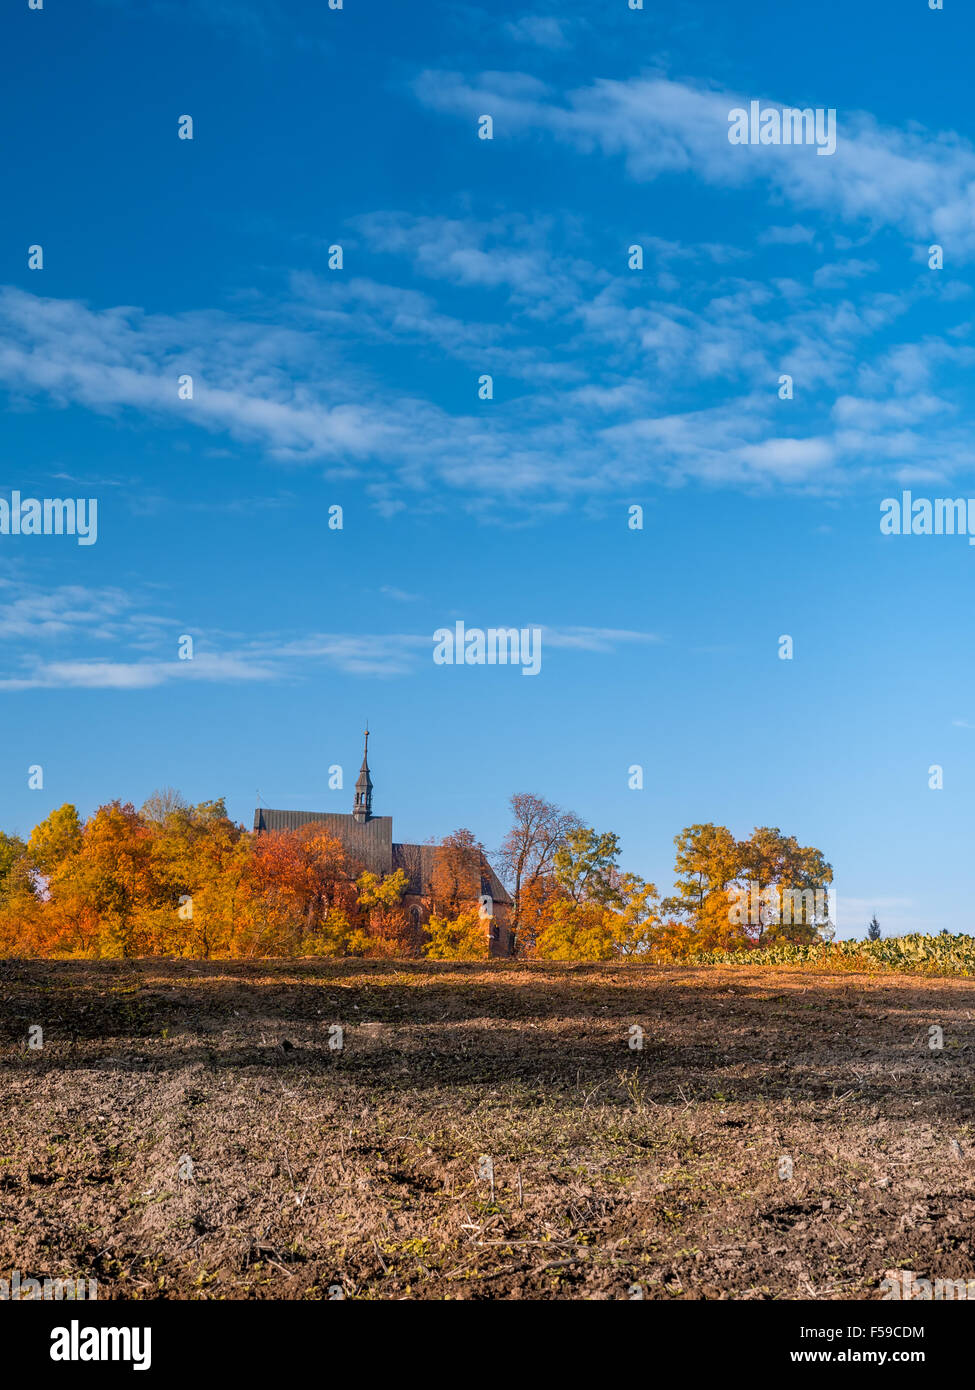 Lande alt-katholischen Kirche, umgeben von Bäumen in Herbstfarben Stockfoto